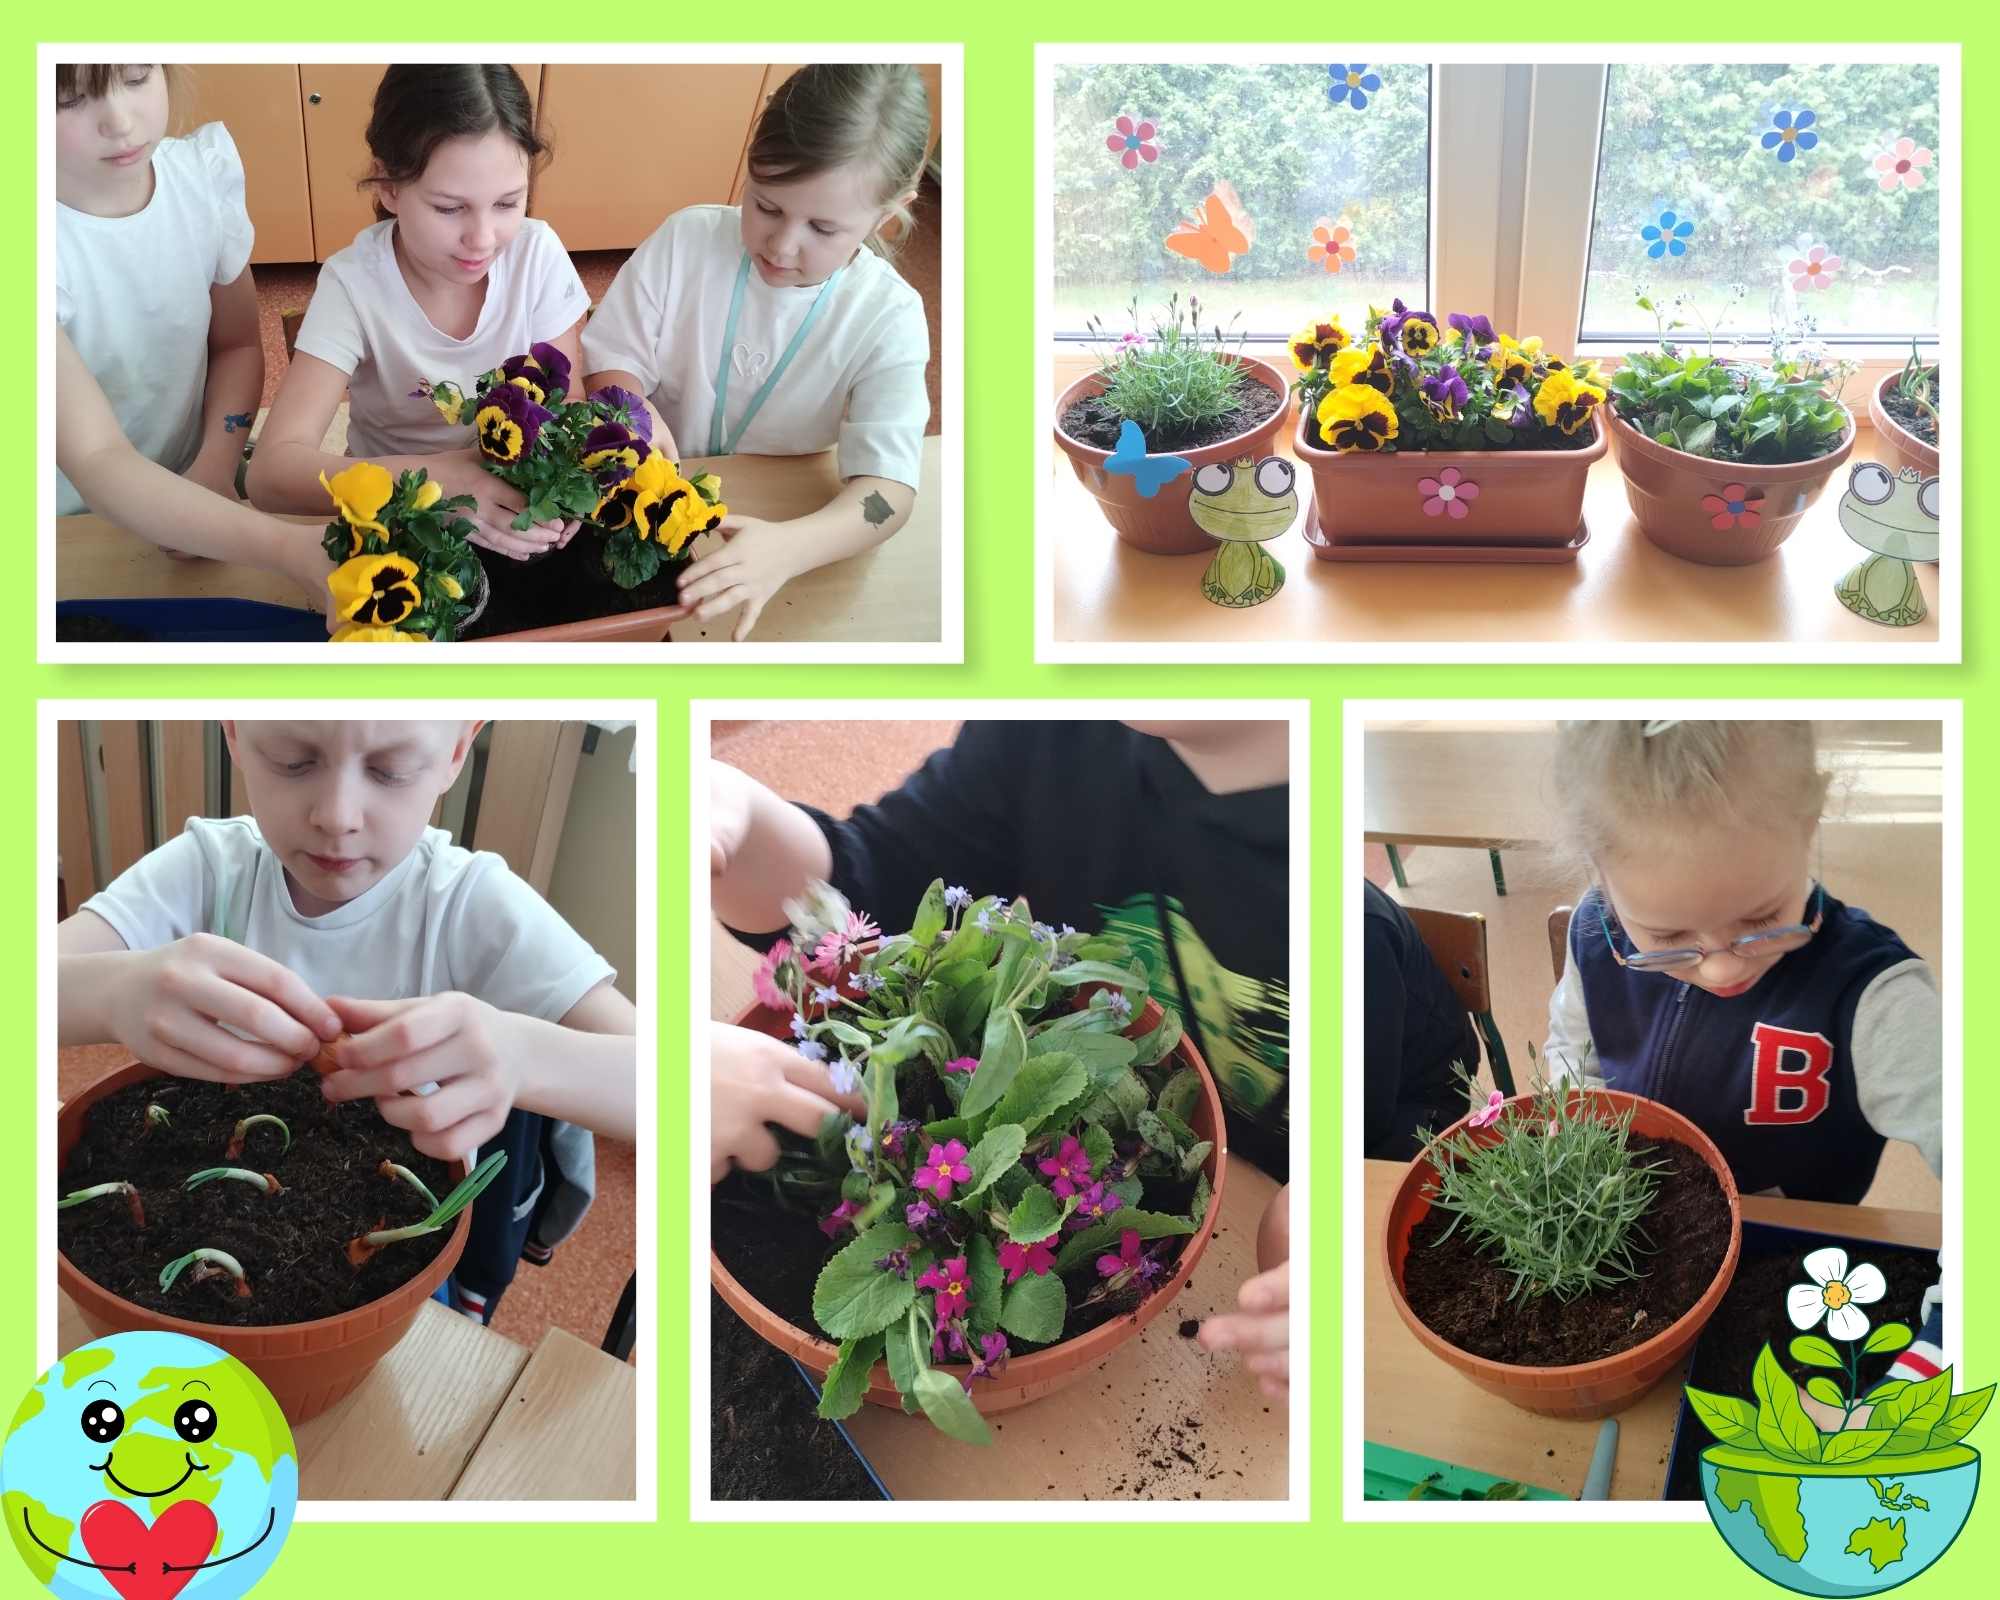 Uczniowie sadzą kwiaty.